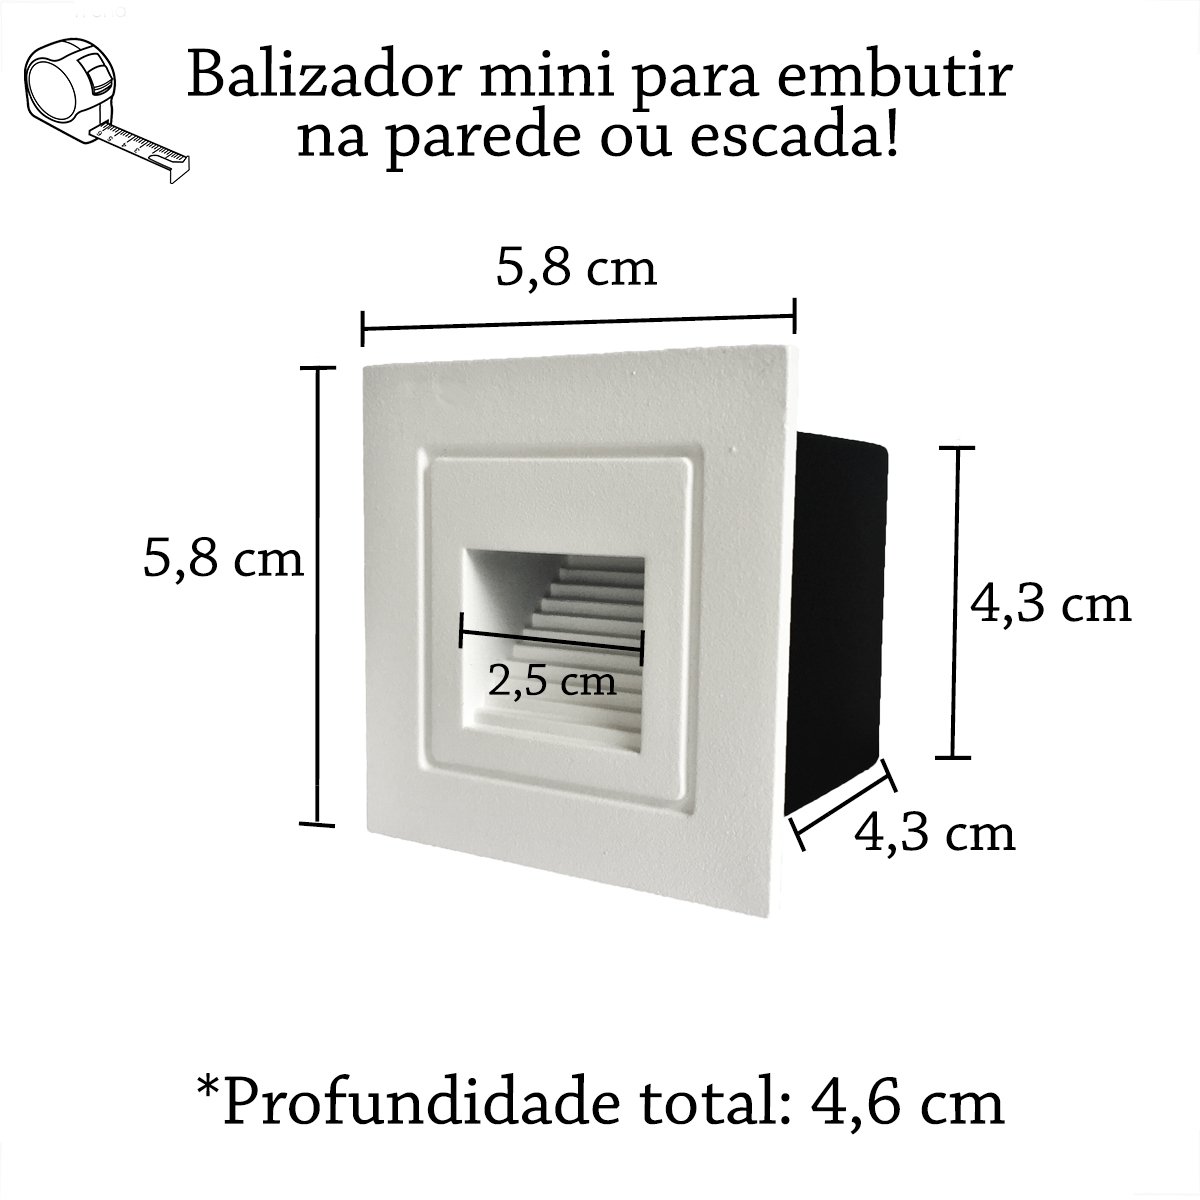 5 Balizador De Embutir Parede Branco Mini Led Escada Lup75 - 6